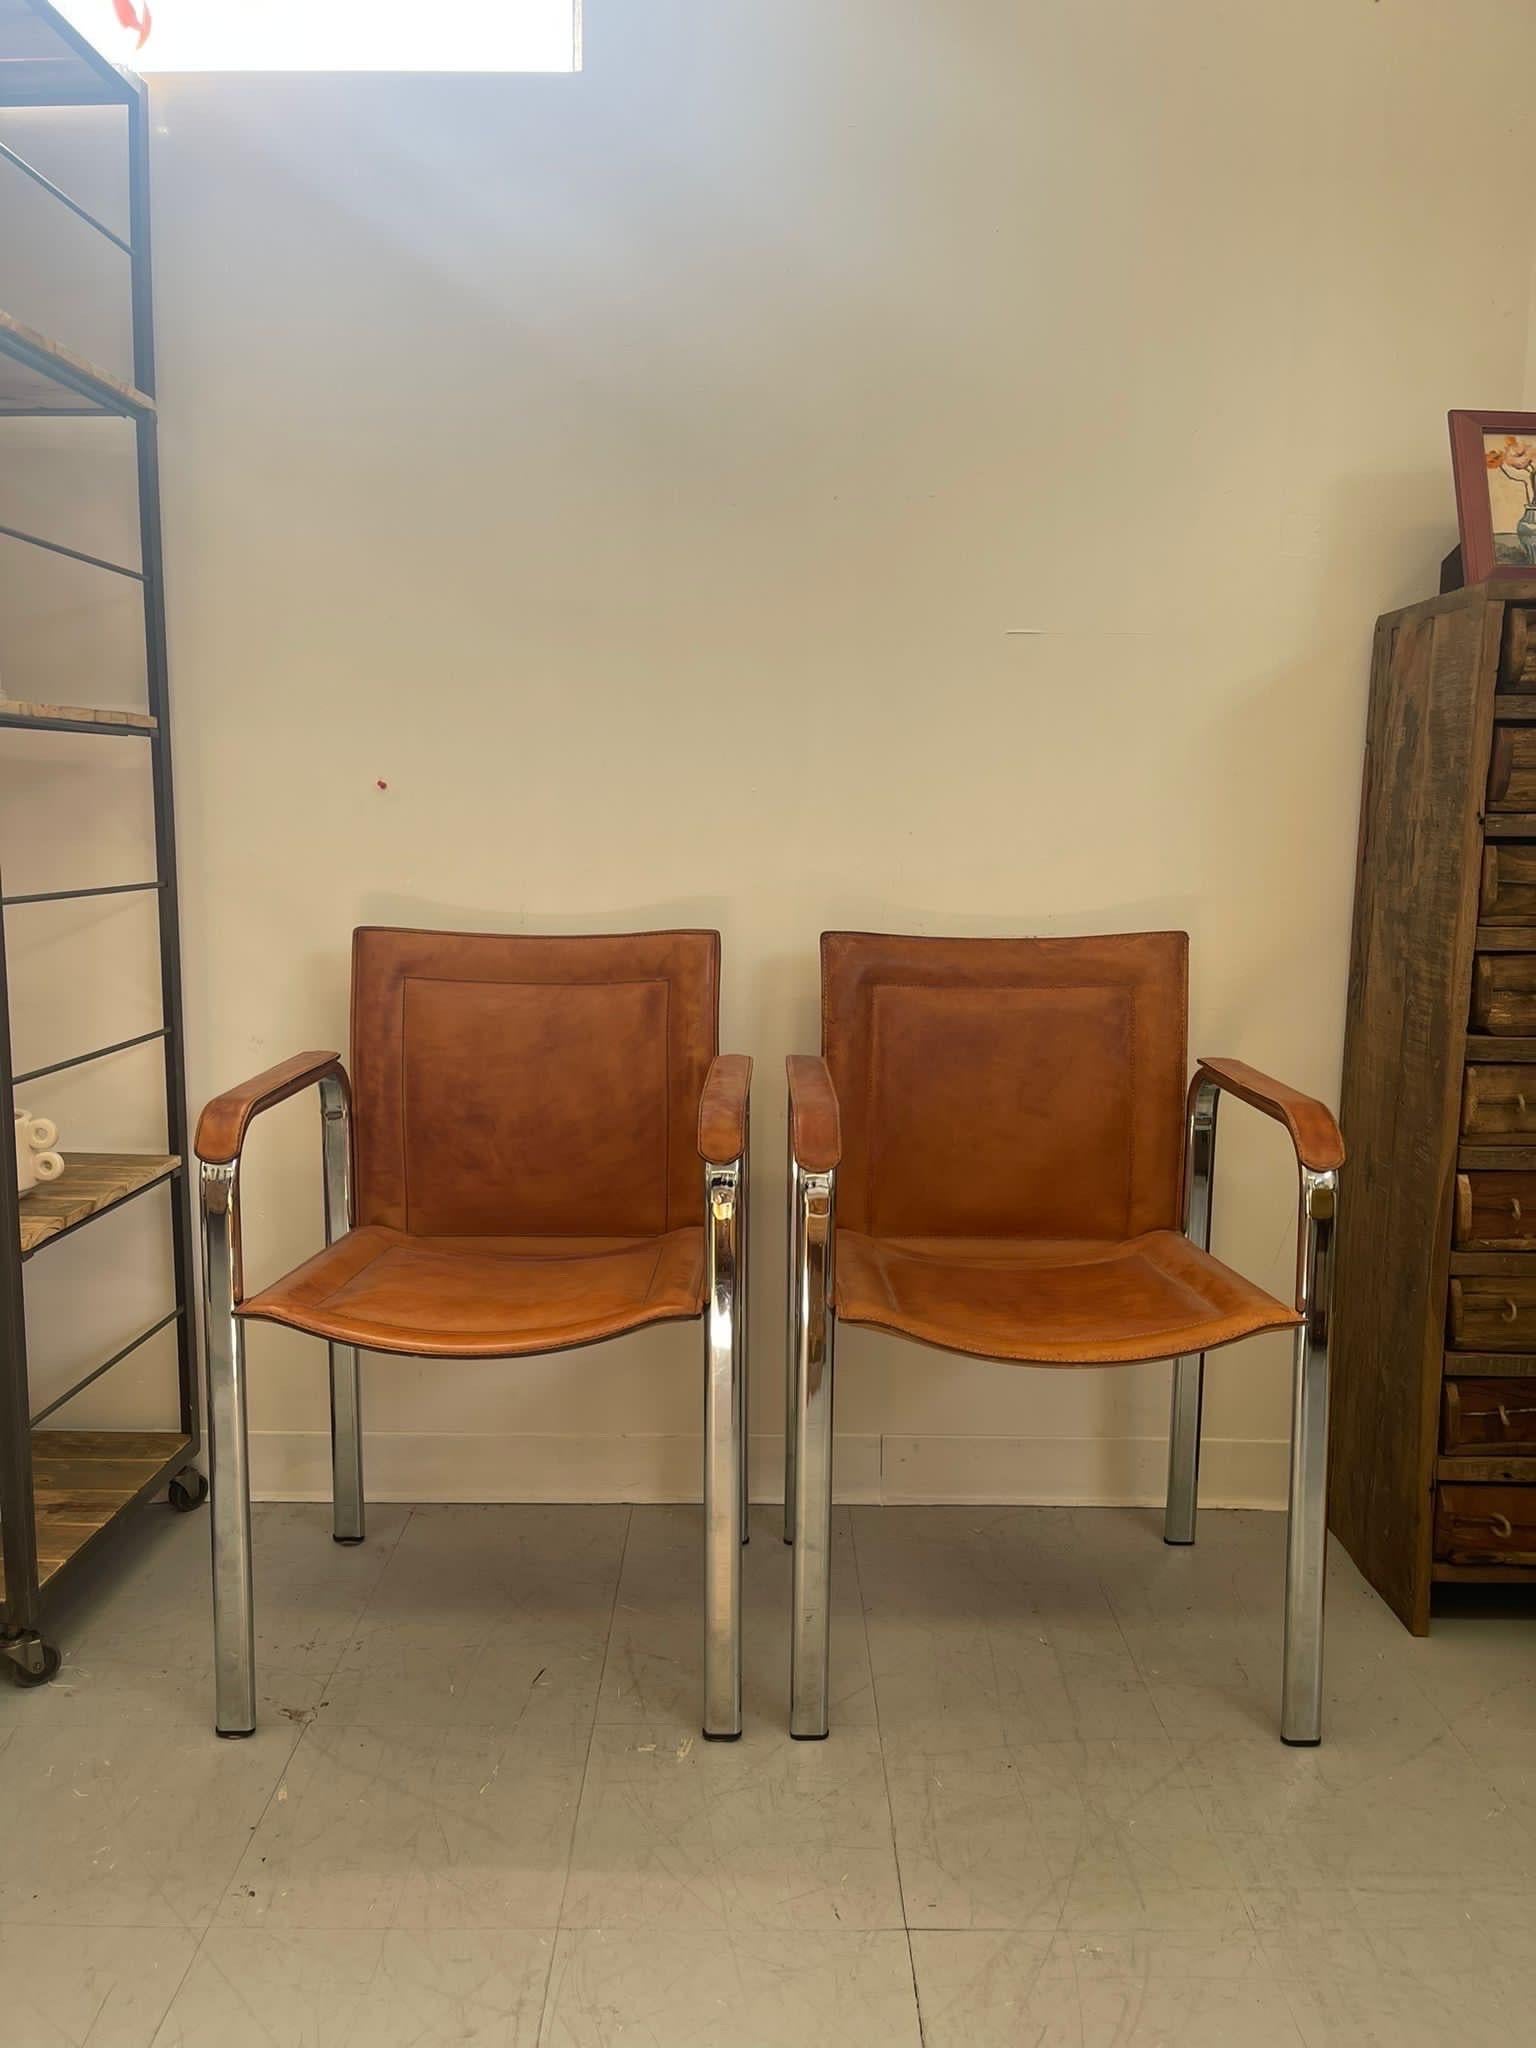 Ensemble de chaises suédoises avec sièges et accoudoirs en cuir. Accent chromé argenté. Vintage Condition Consistent with Age as Pictured.

Dimensions. 22 L ; 19 P ; 32 NO